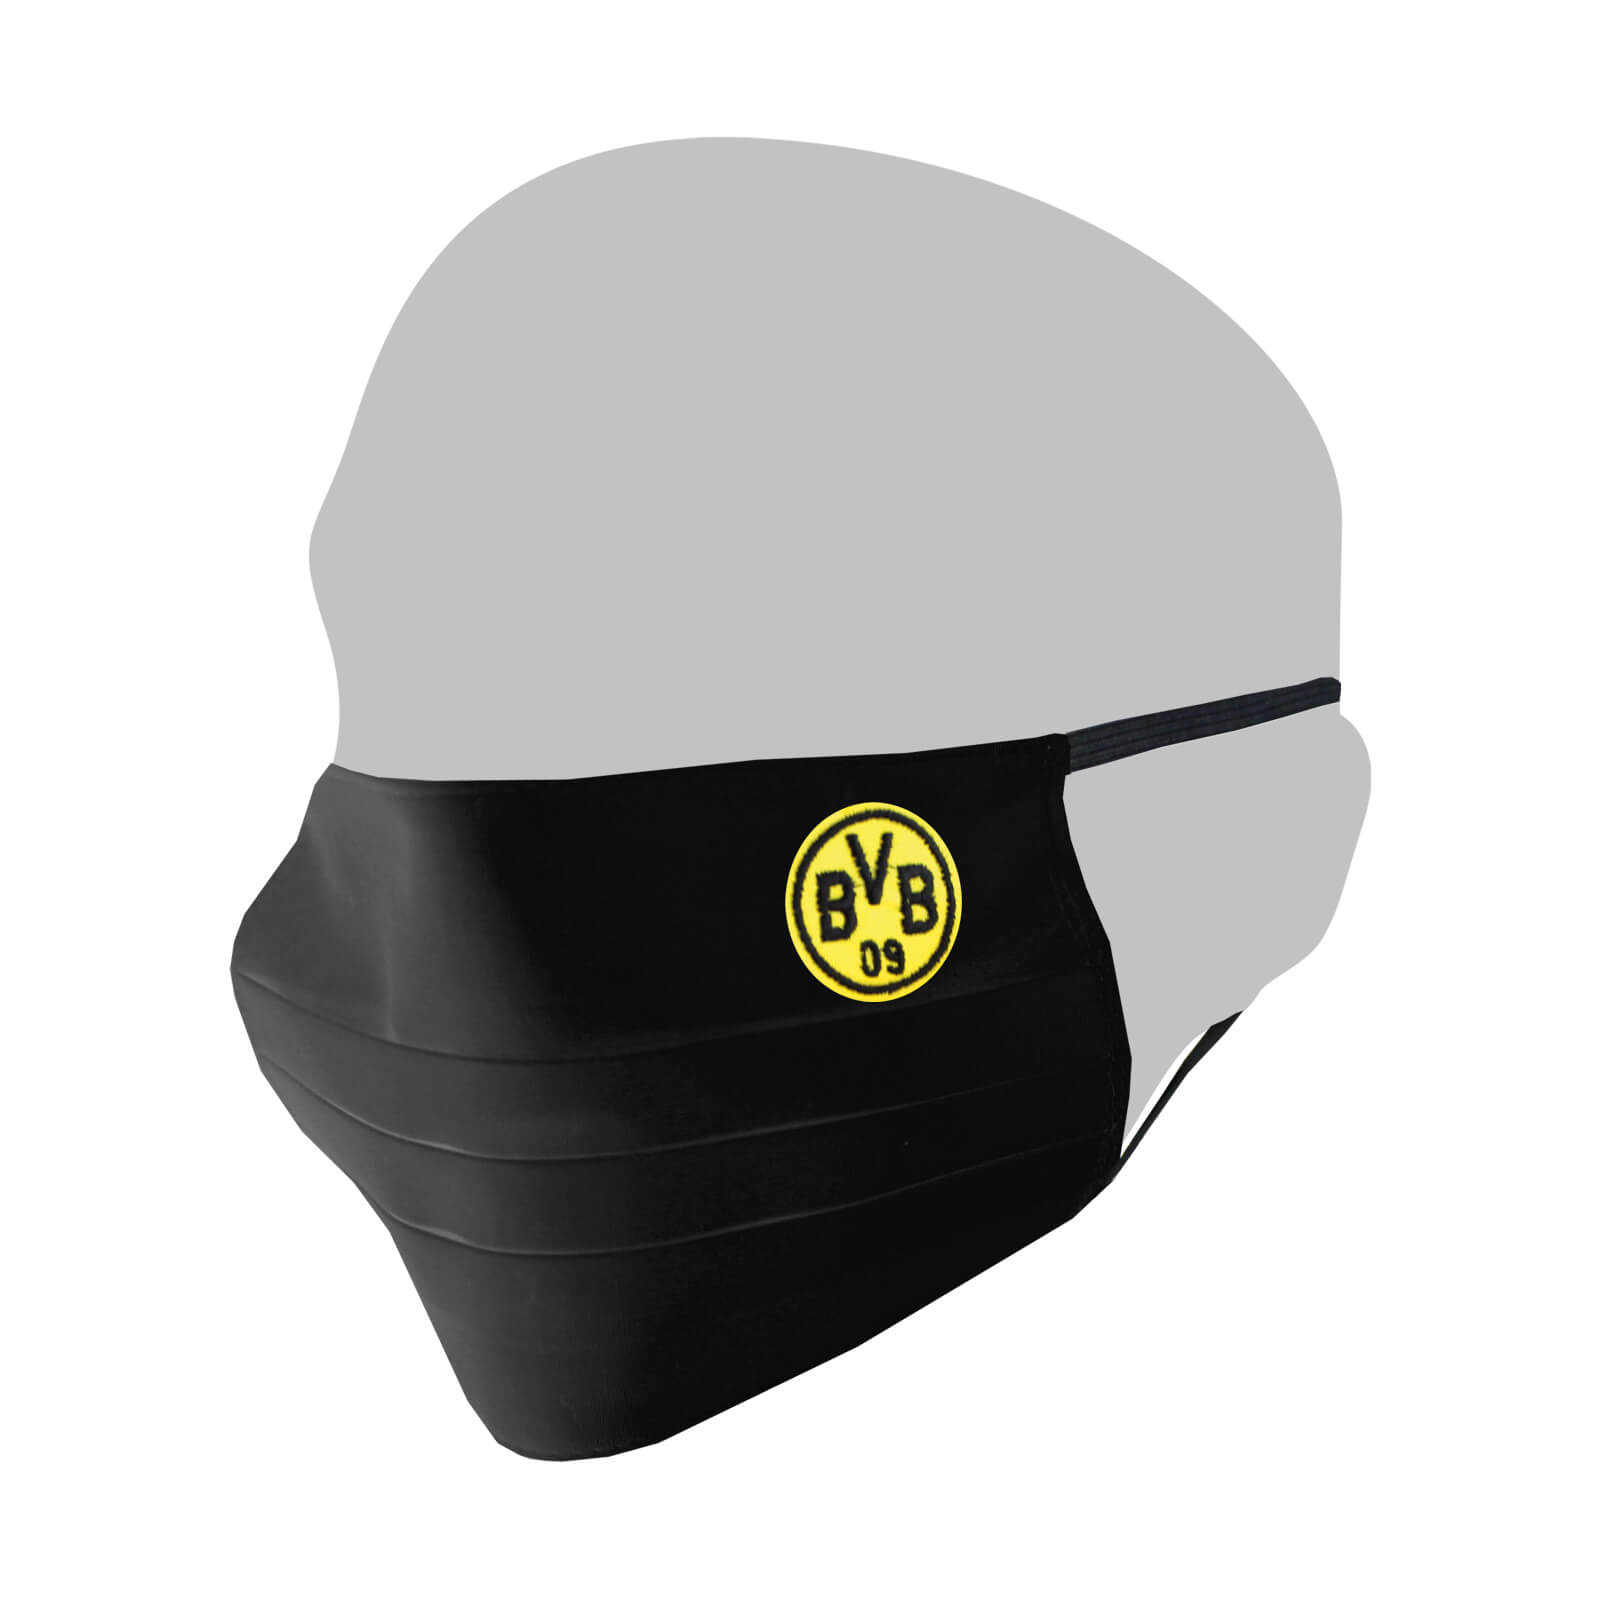 20213900 Mund-Nasen-Schutz Maske Borussia Dortmund BVB Gesichtsmaske 